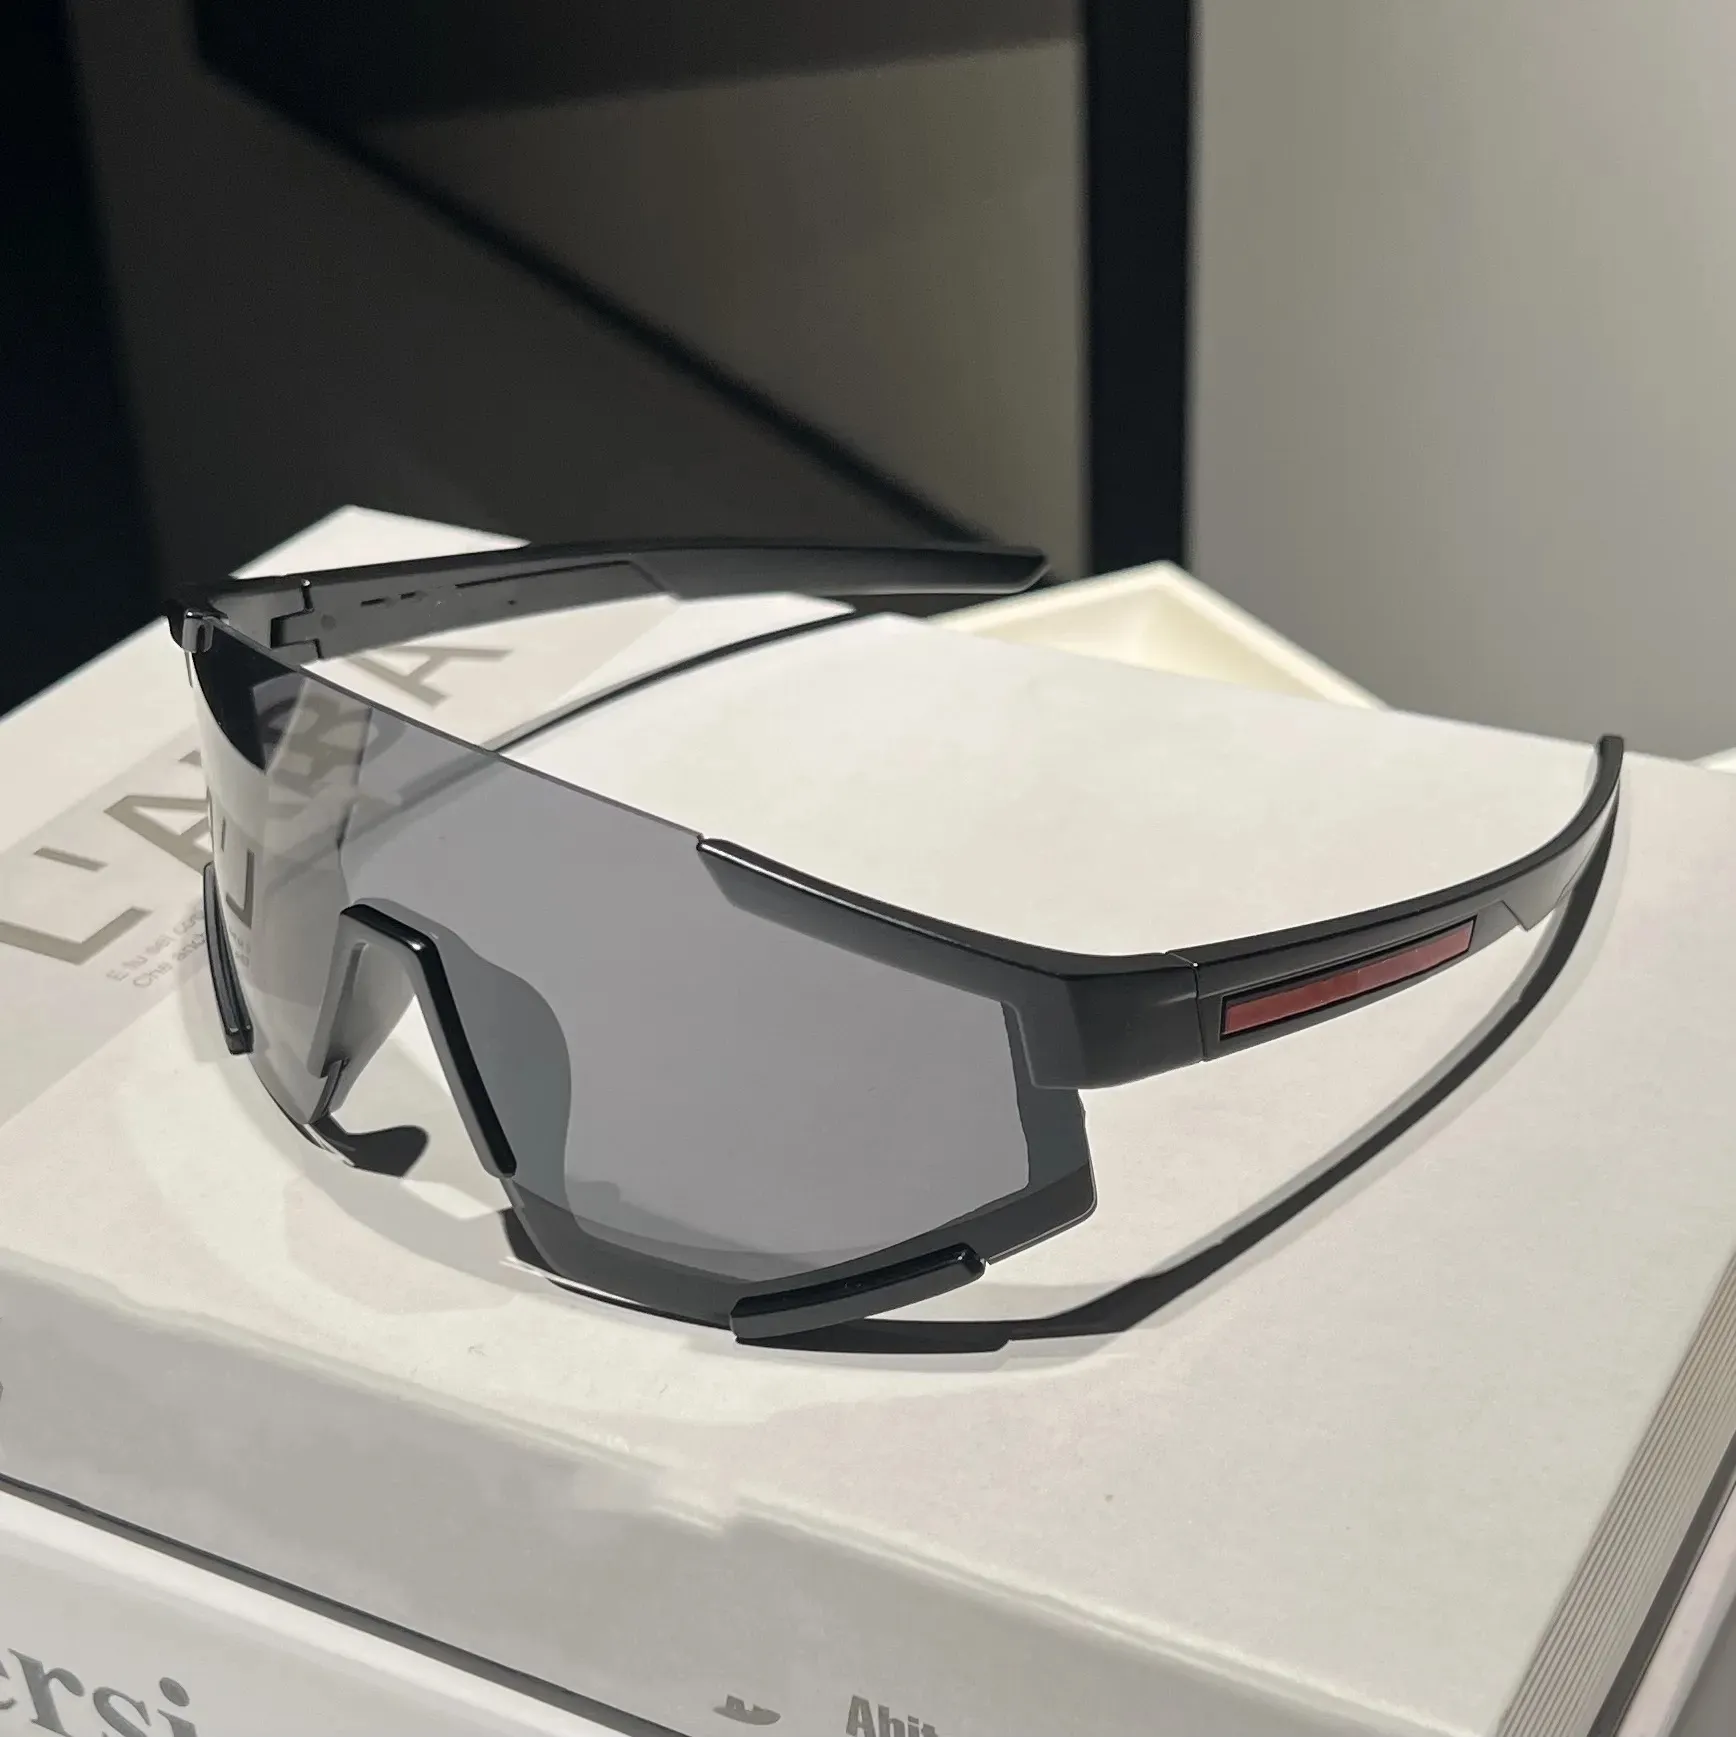 Новые спортивные солнцезащитные очки для велоспорта. Роскошные дизайнерские очки с поляризационными линзами для мужчин и женщин. Модные солнцезащитные очки с большой оправой и ночным зеркалом. Спортивные очки для бега.